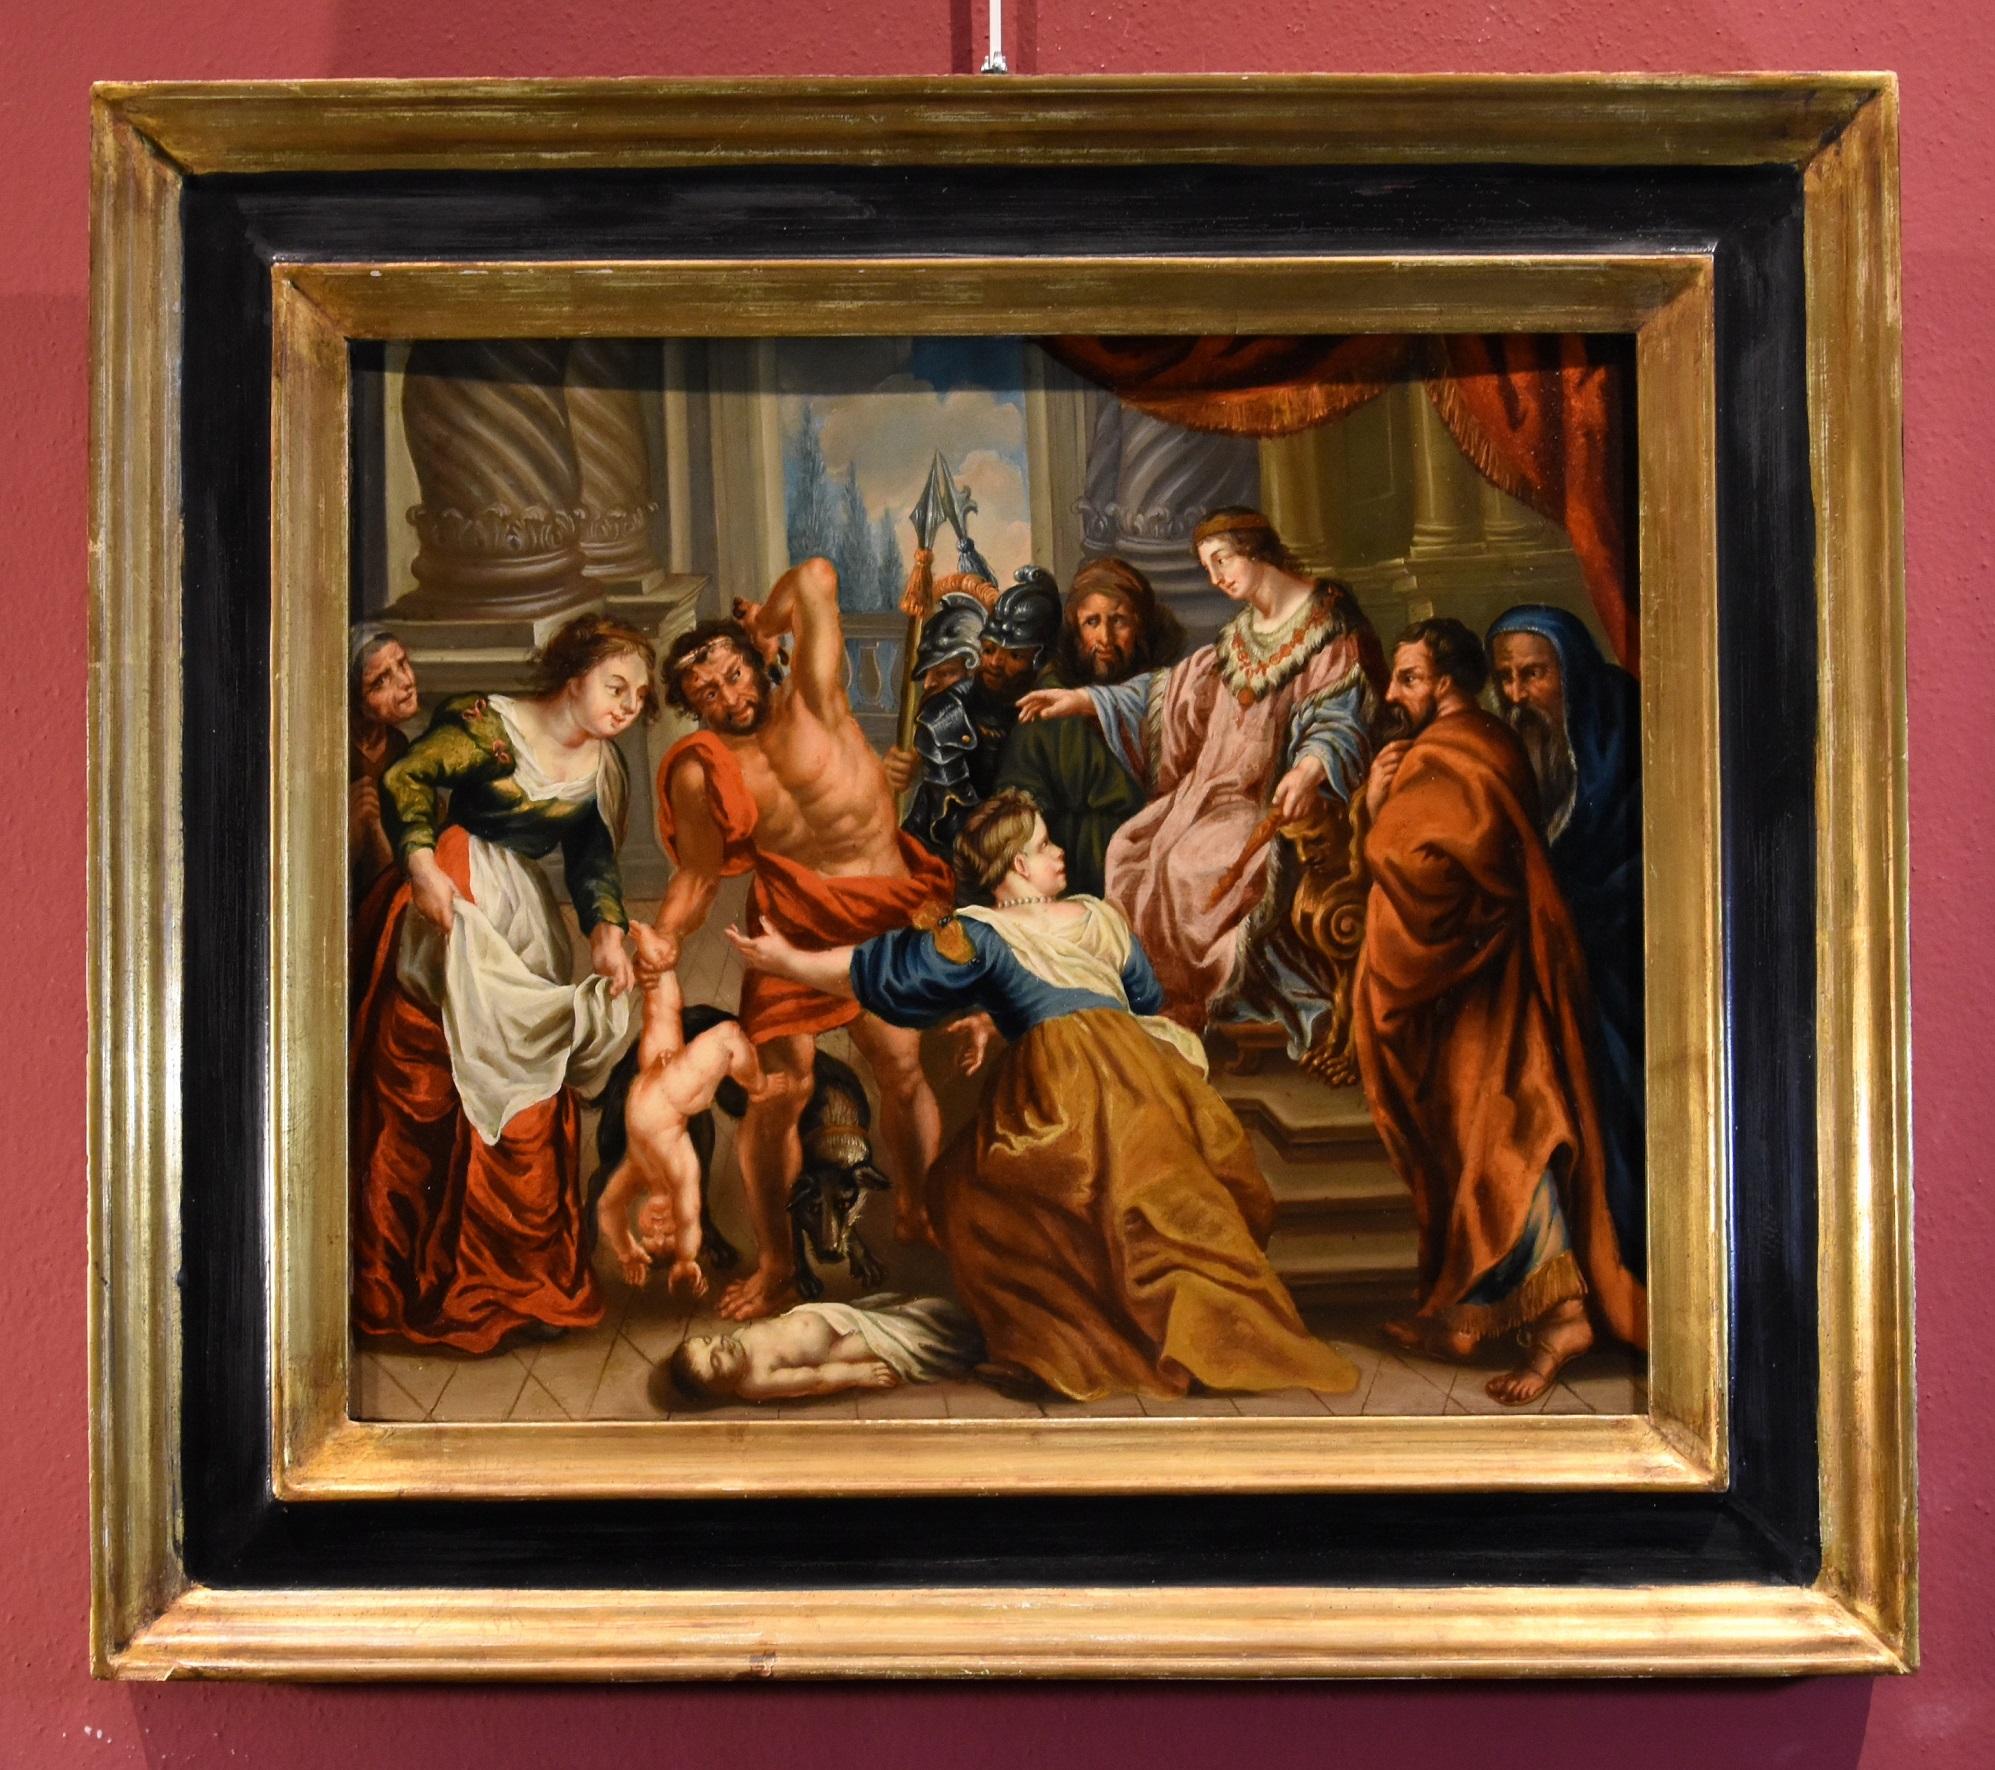 König Salomon Rubens Gemälde Öl auf Kupfer 17. Jahrhundert Alter Meister Flemish Art – Painting von Circle of Peter Paul Rubens (Siegen 1577 - Antwerp 1640)